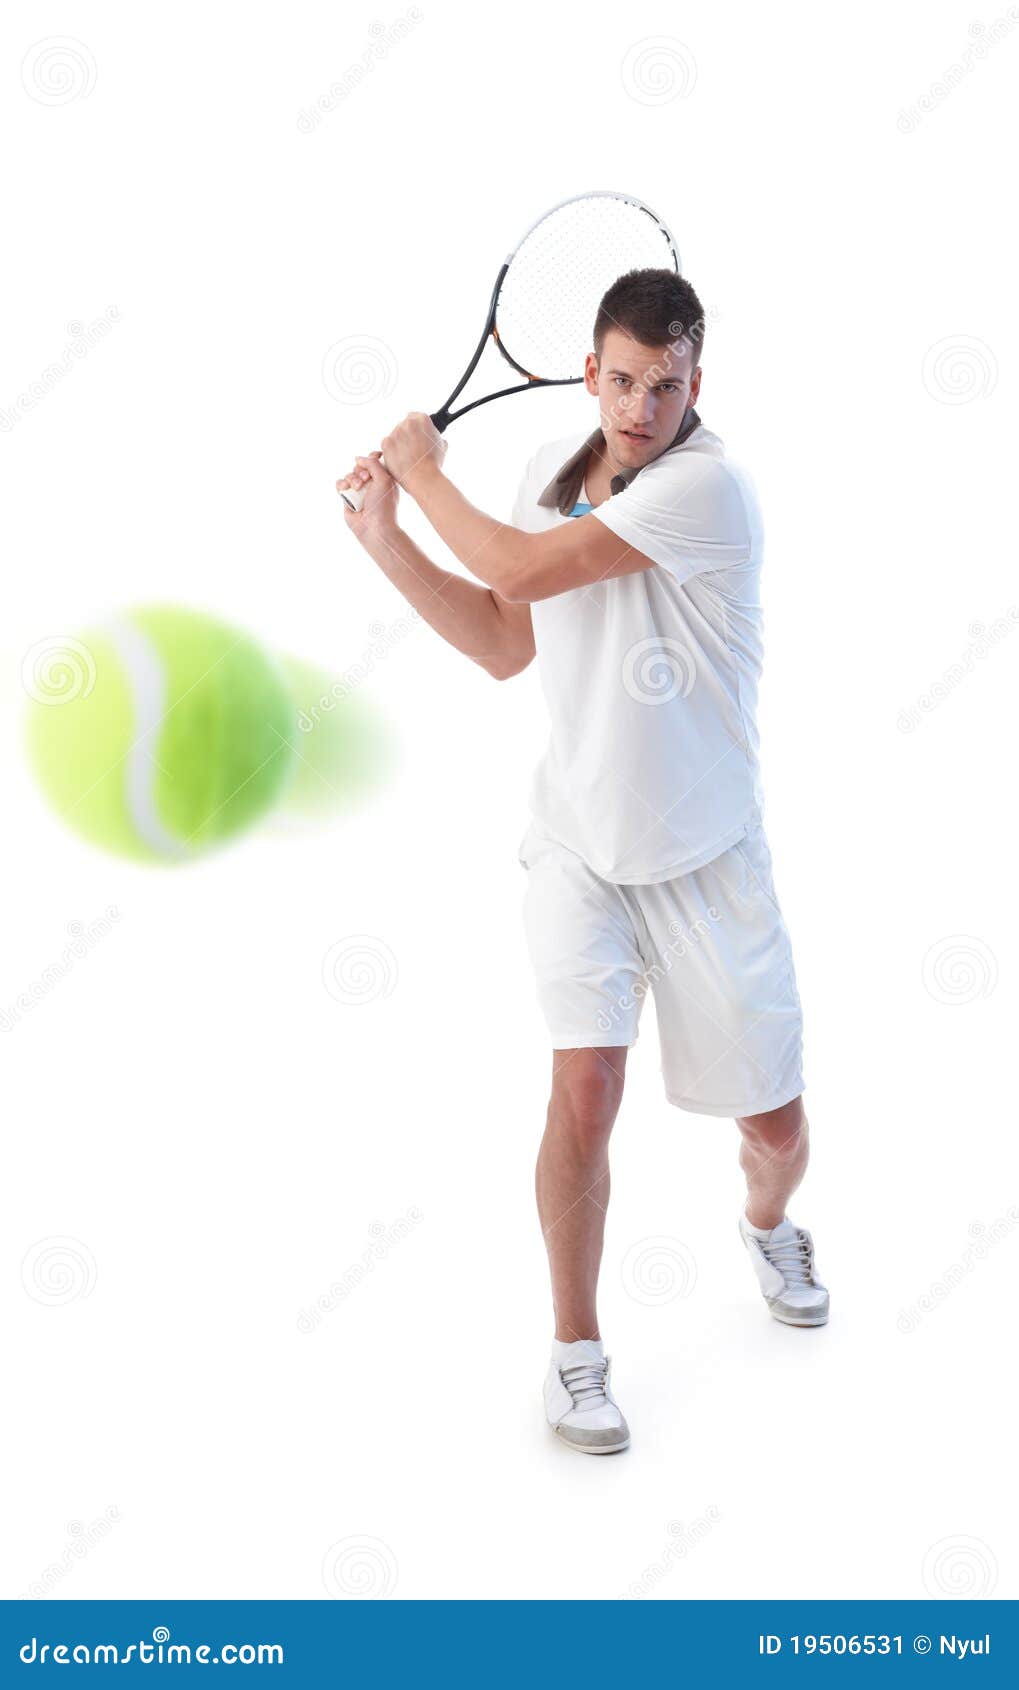 tennis player doing backhand stroke